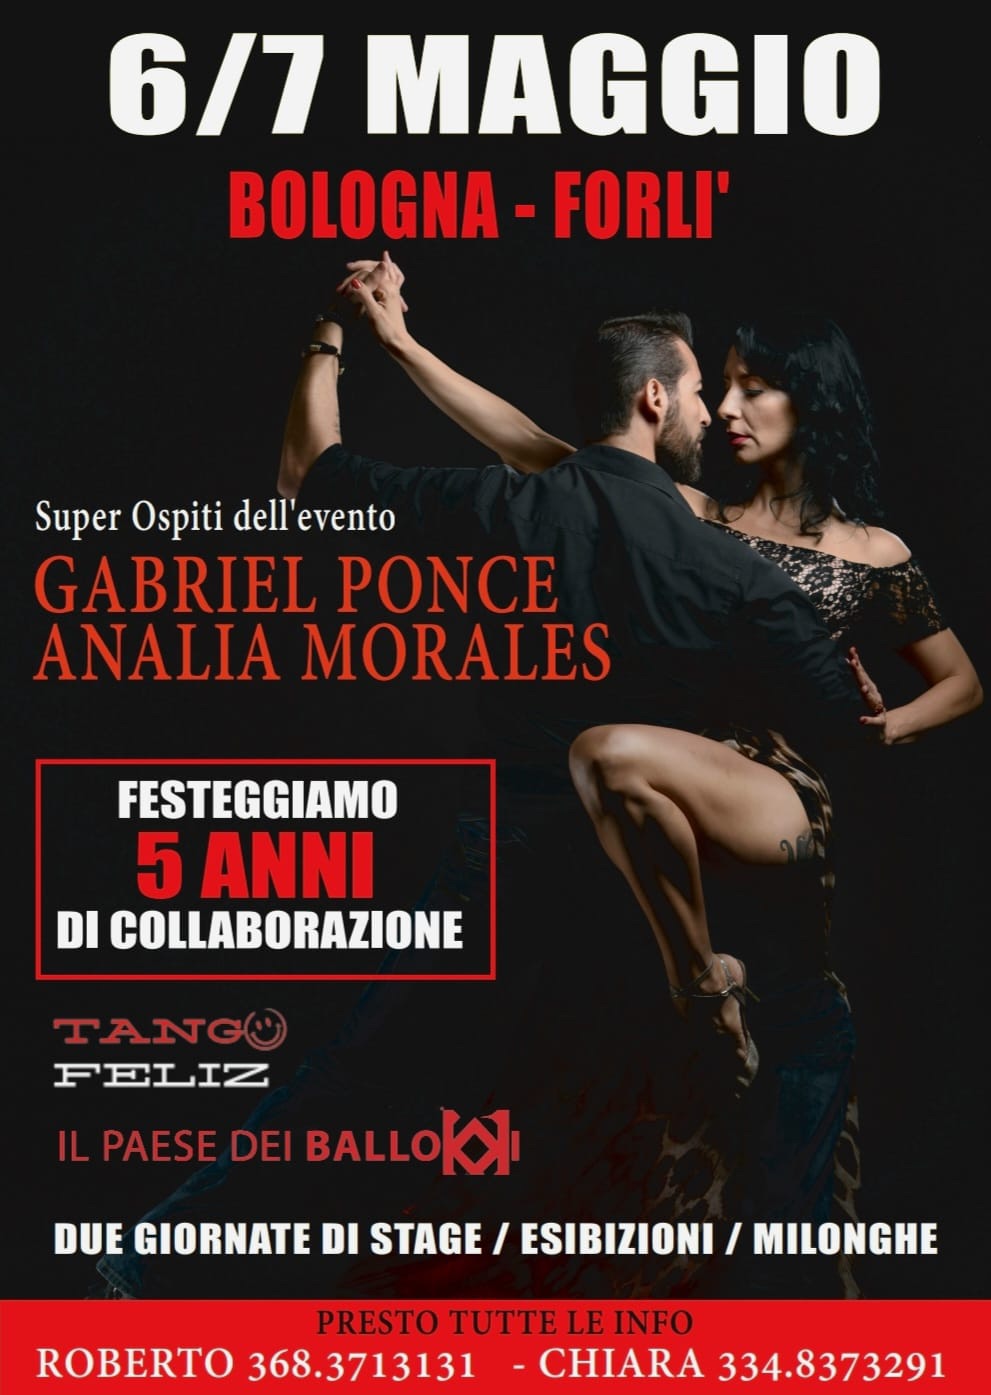 Gabriel Ponce y Analia Morales | 6/7 maggio a Bologna e Forlì